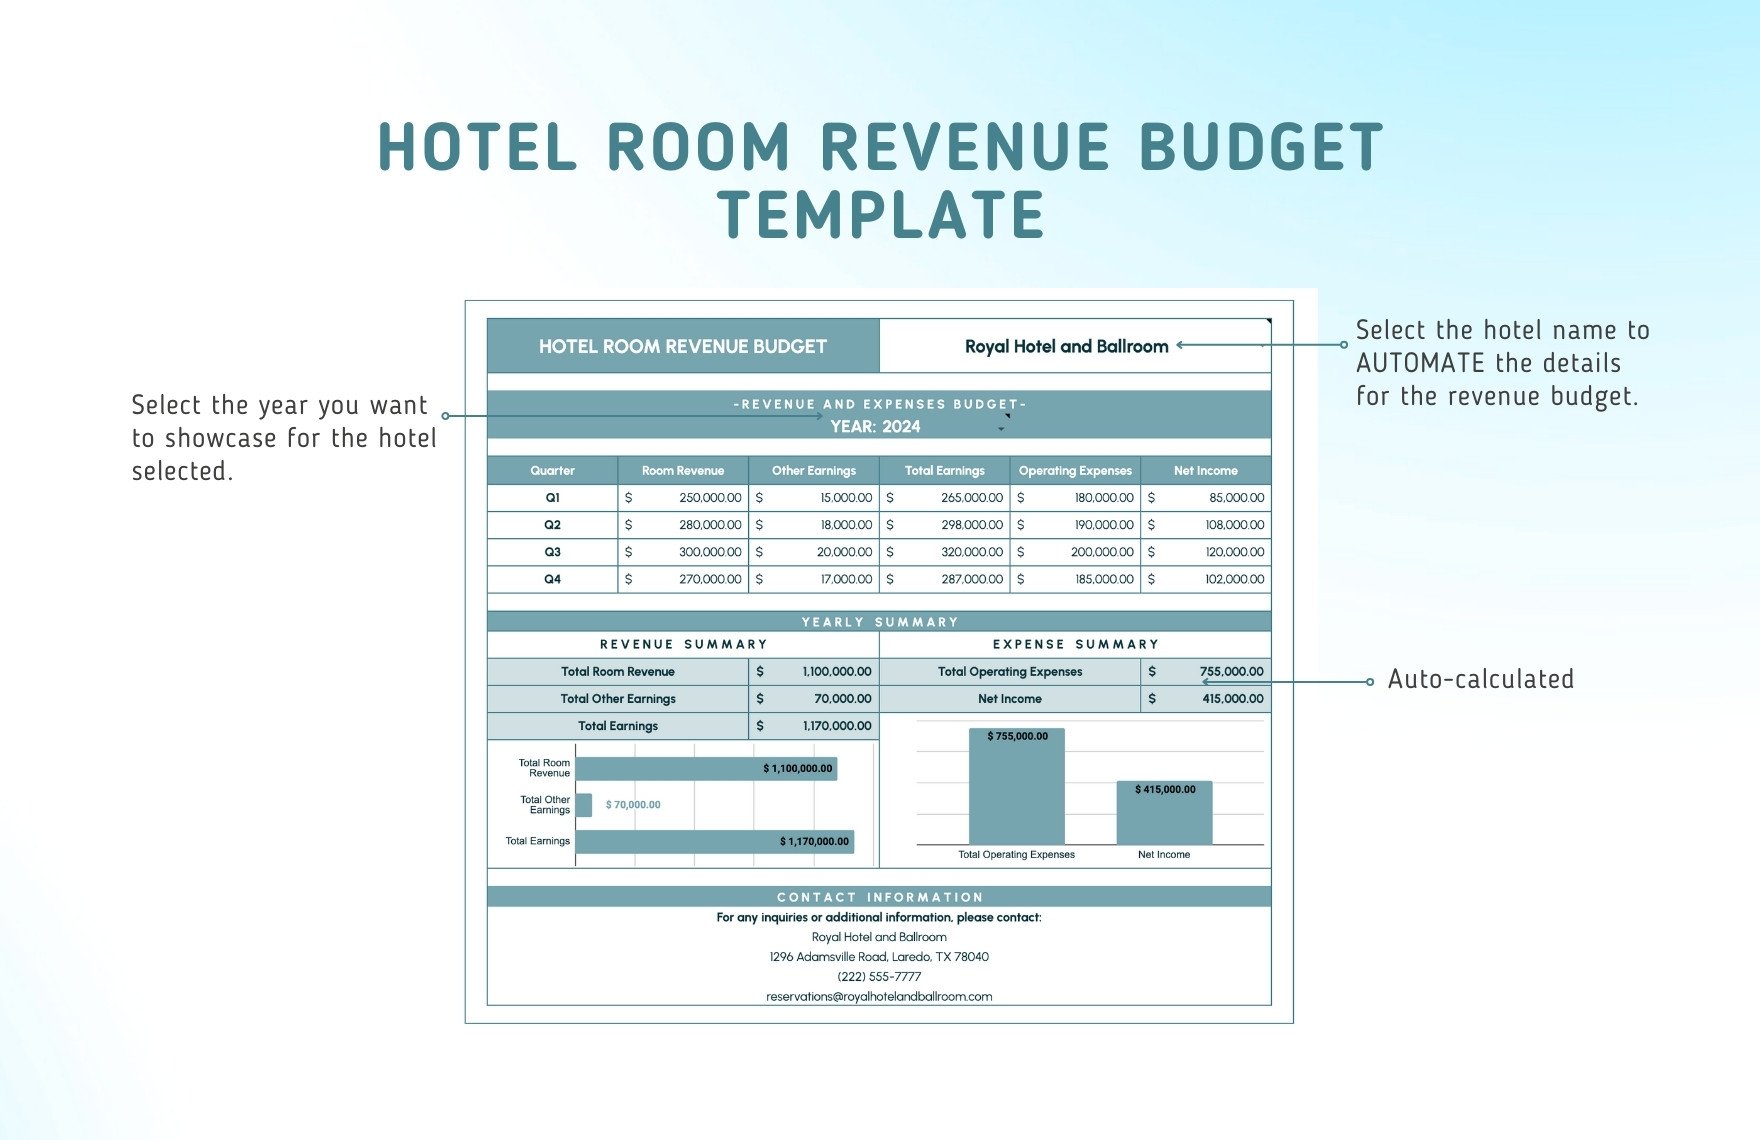 Hotel Room Revenue Budget Template